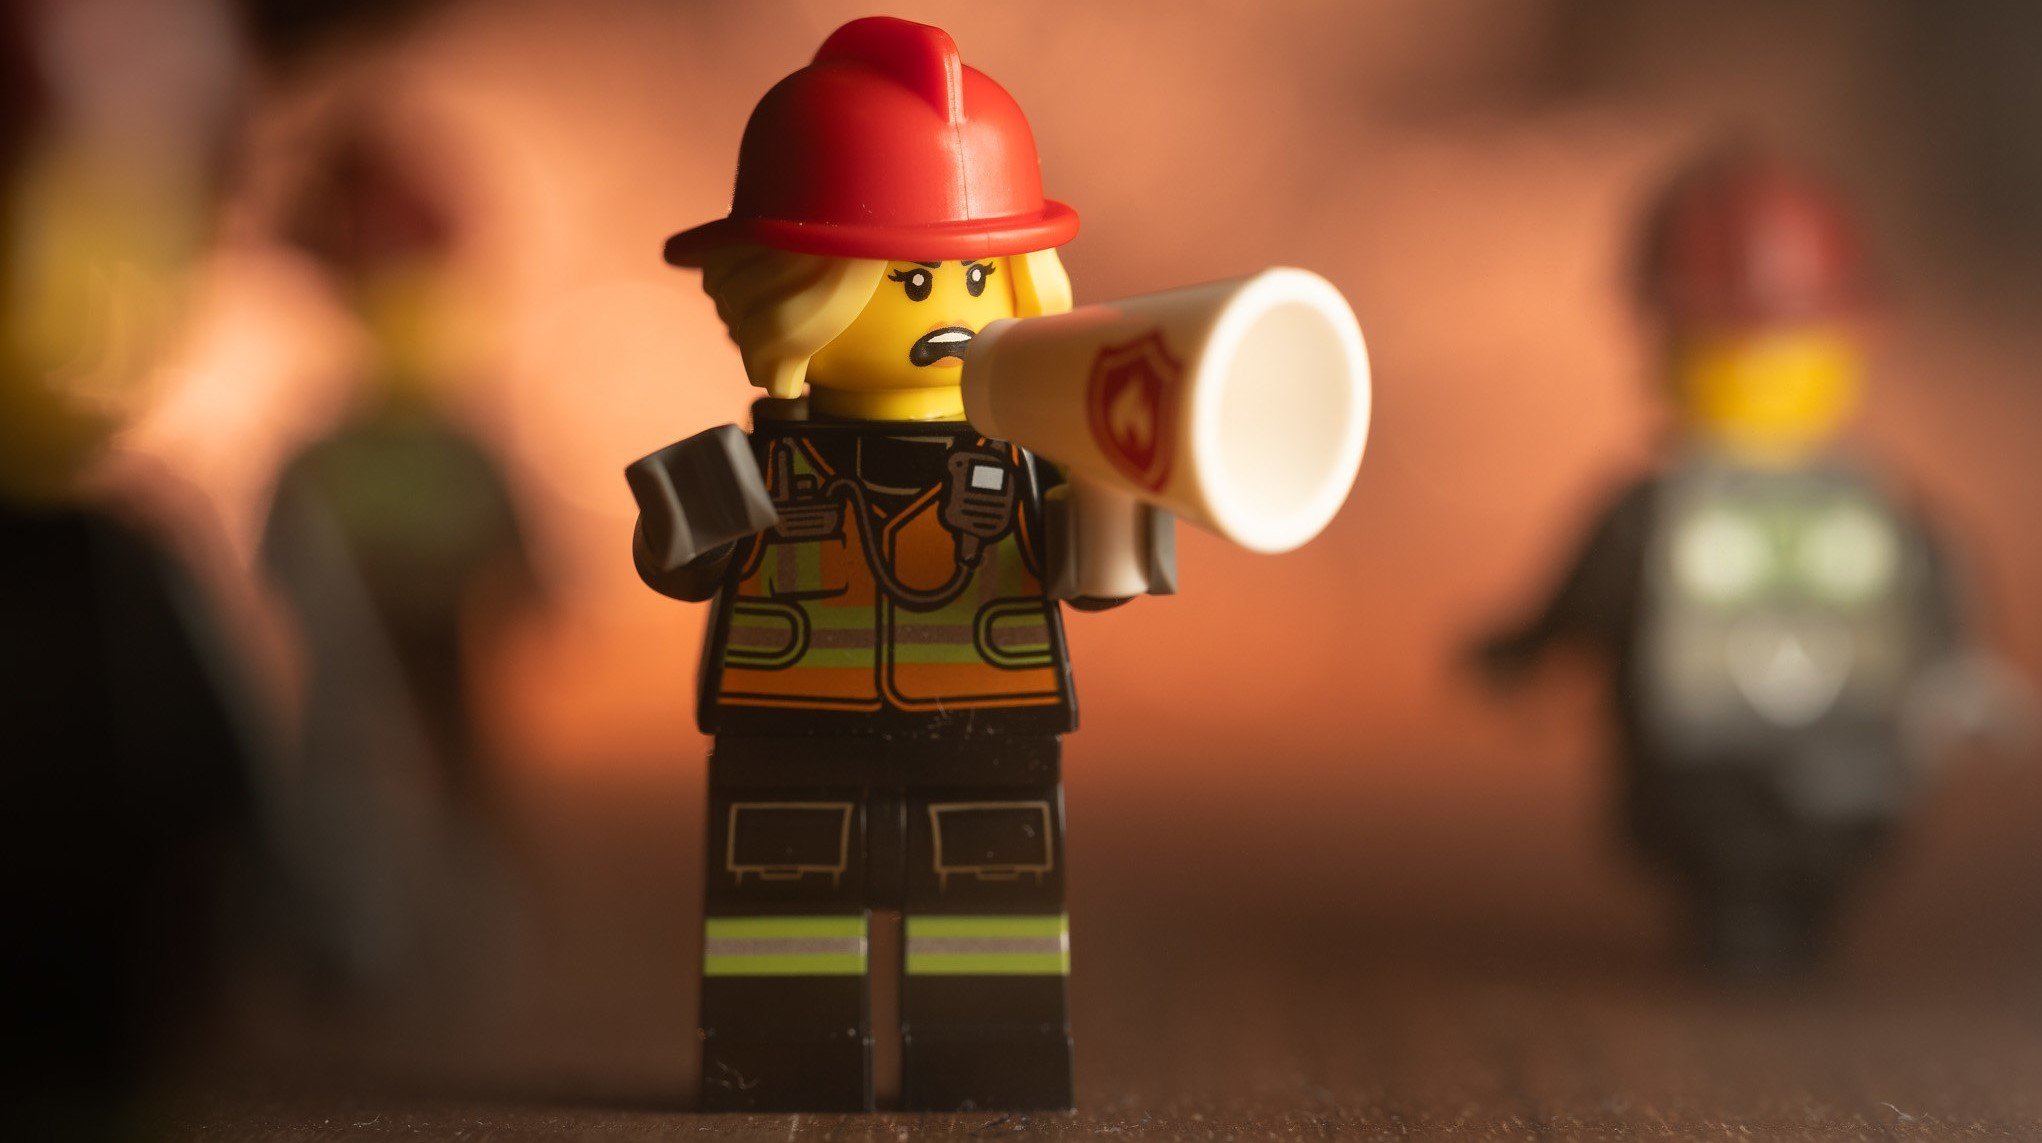 A LEGO Firefighter on a bullhorn.